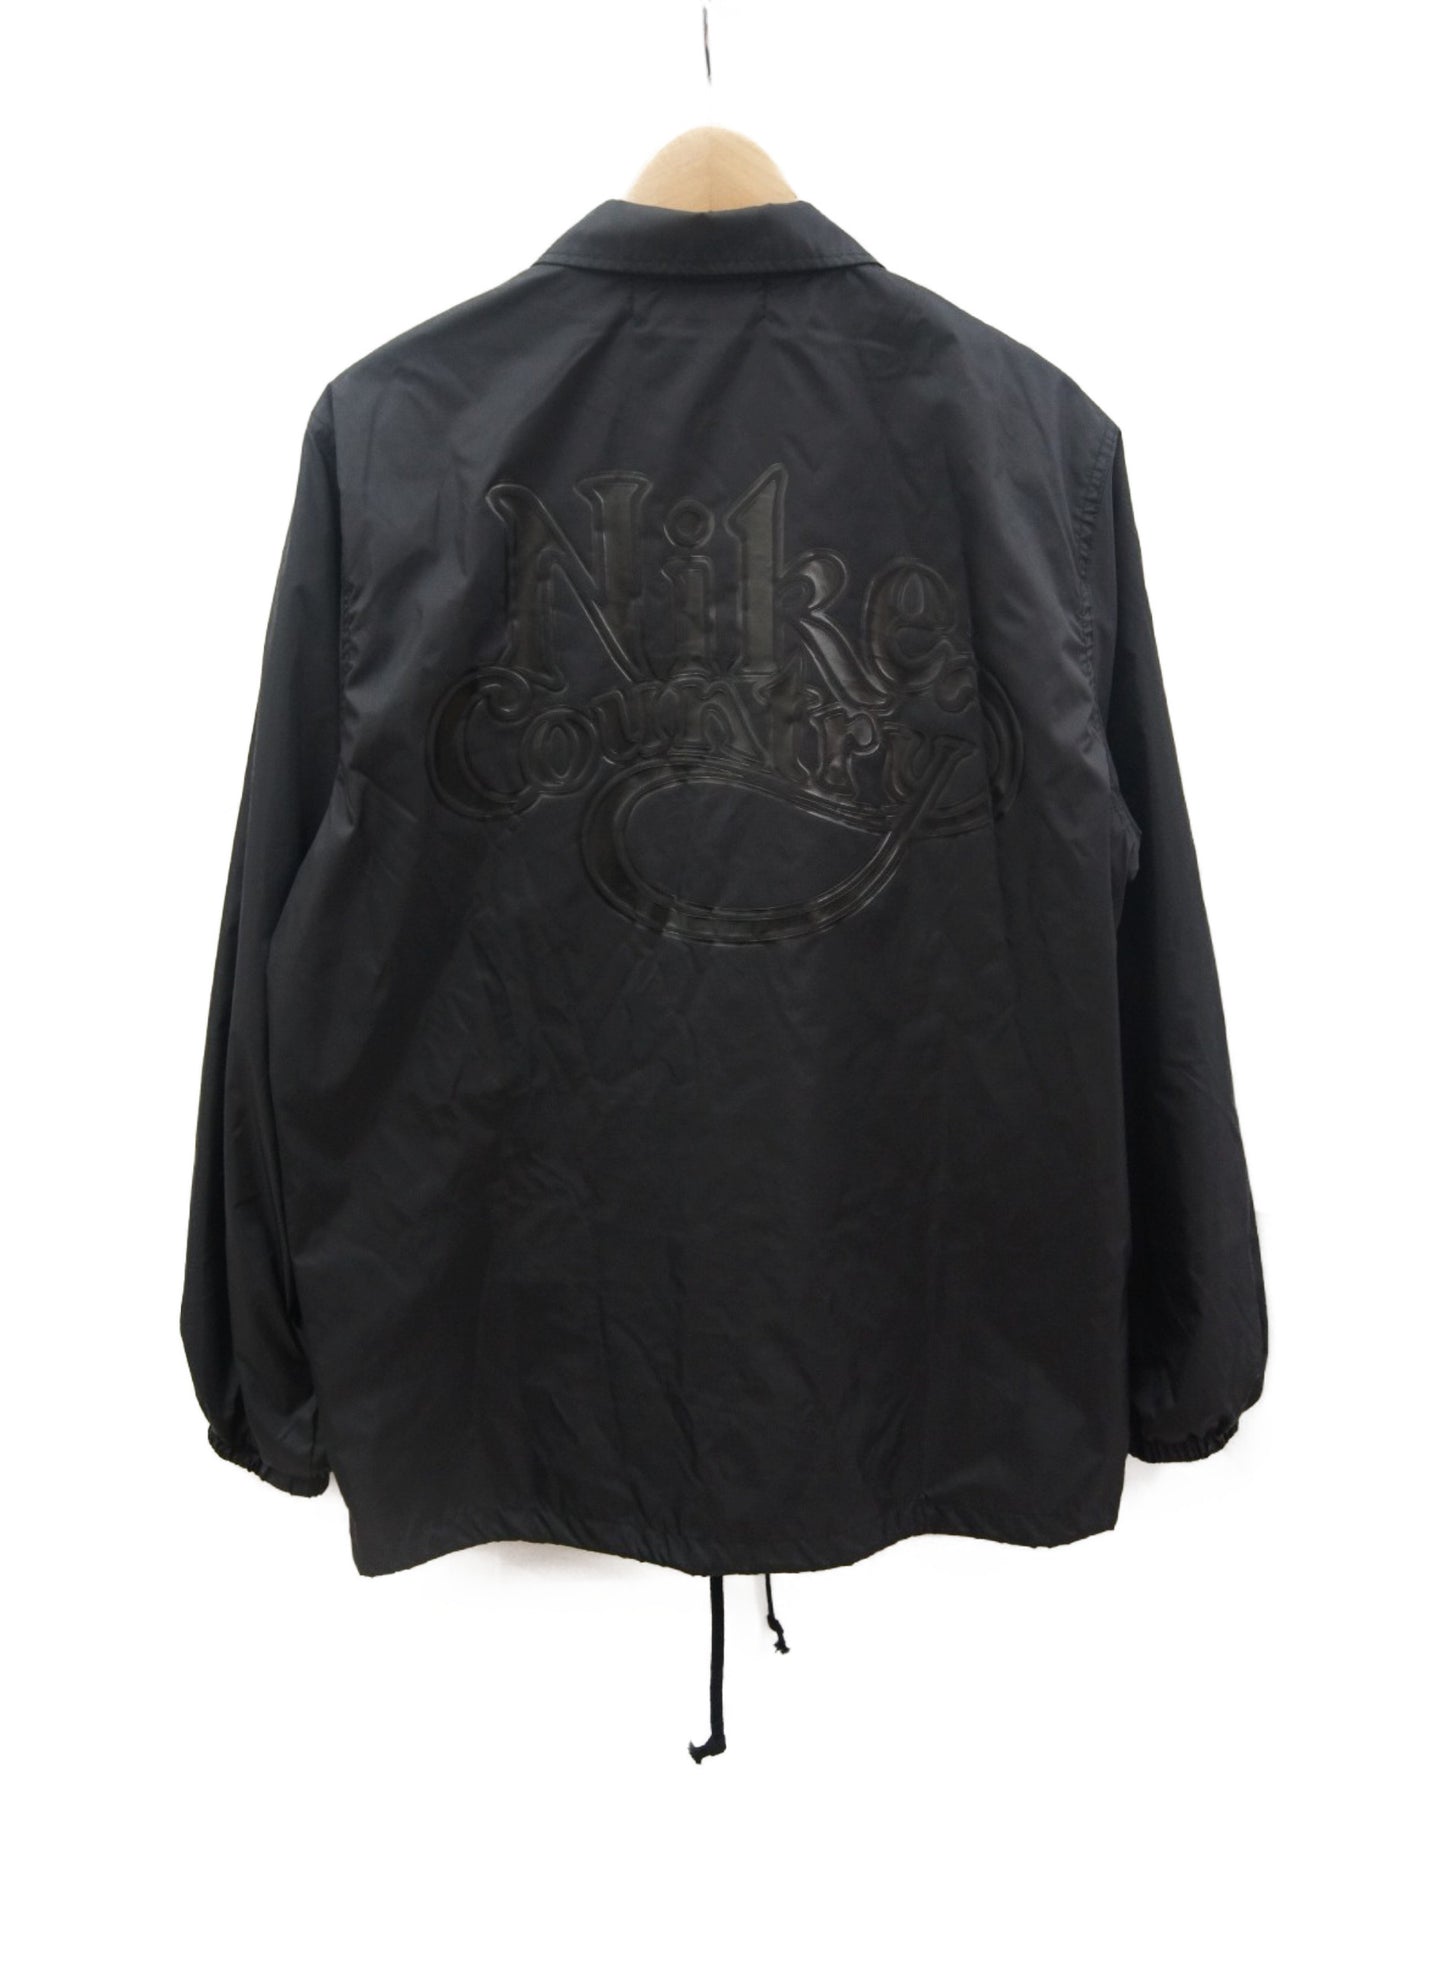 [Pre-owned] BLACK COMME des GARCONS × NIKE coach jacket 1E-J101